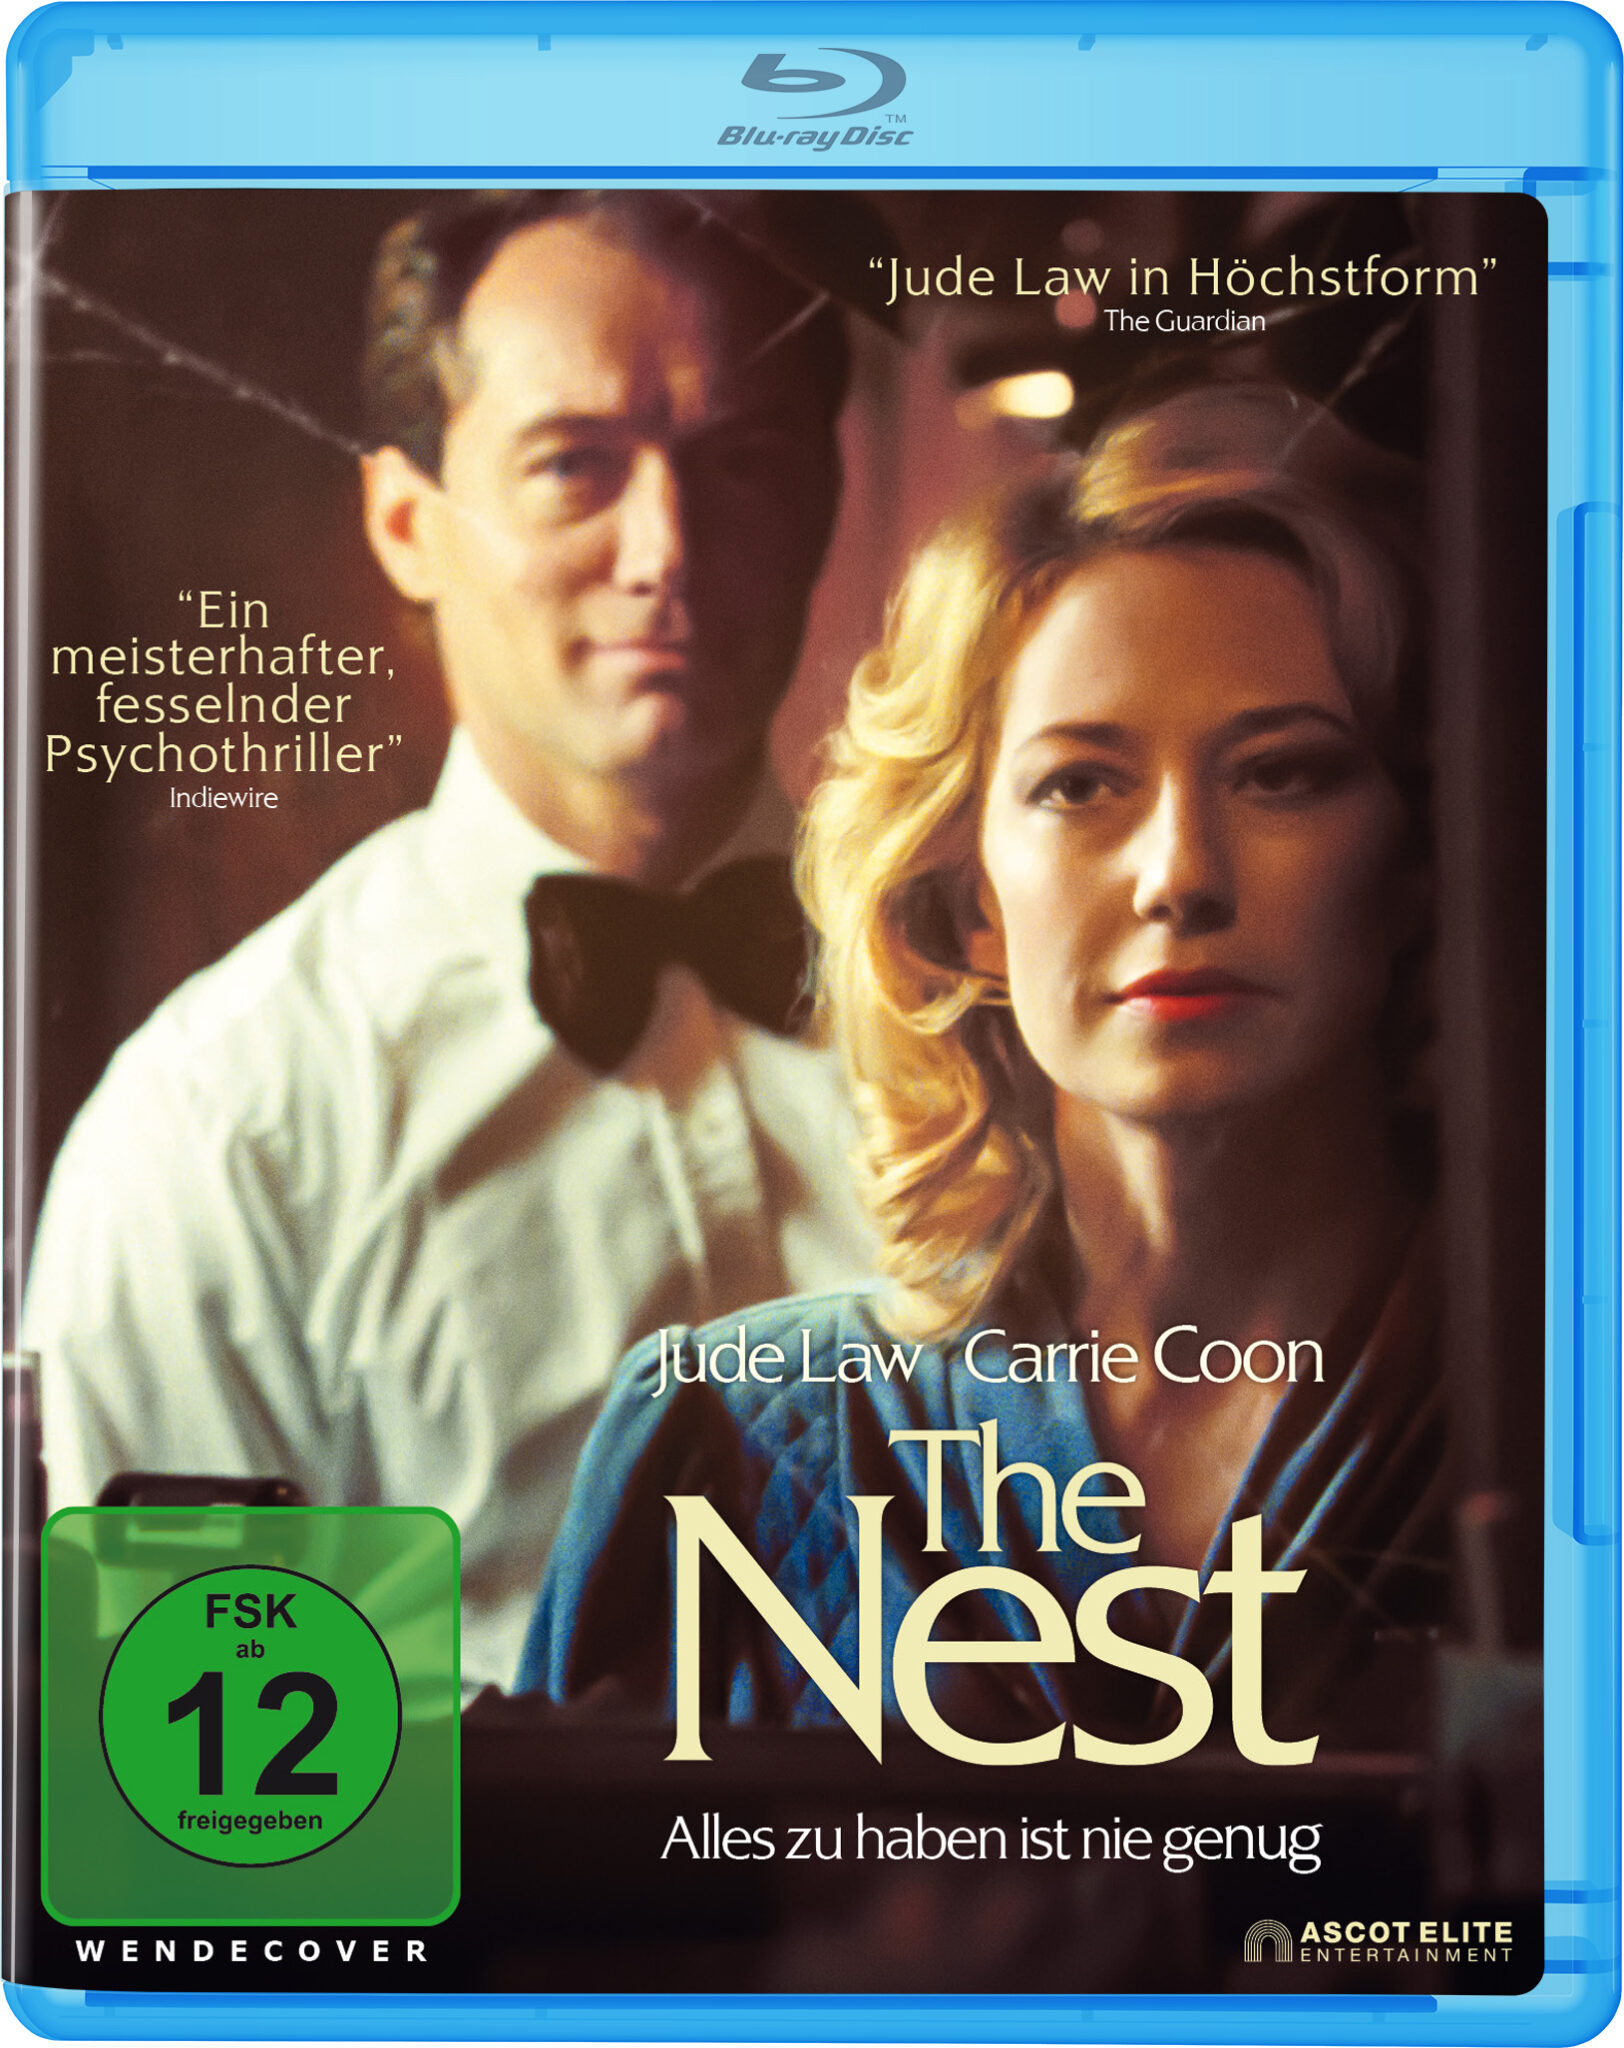 Das Cover der Blu-Ray-Disc des Film The Nest zeigt die beiden Protagonisten, den Titel und auch die Altersfreigabe ab 12 Jahren.